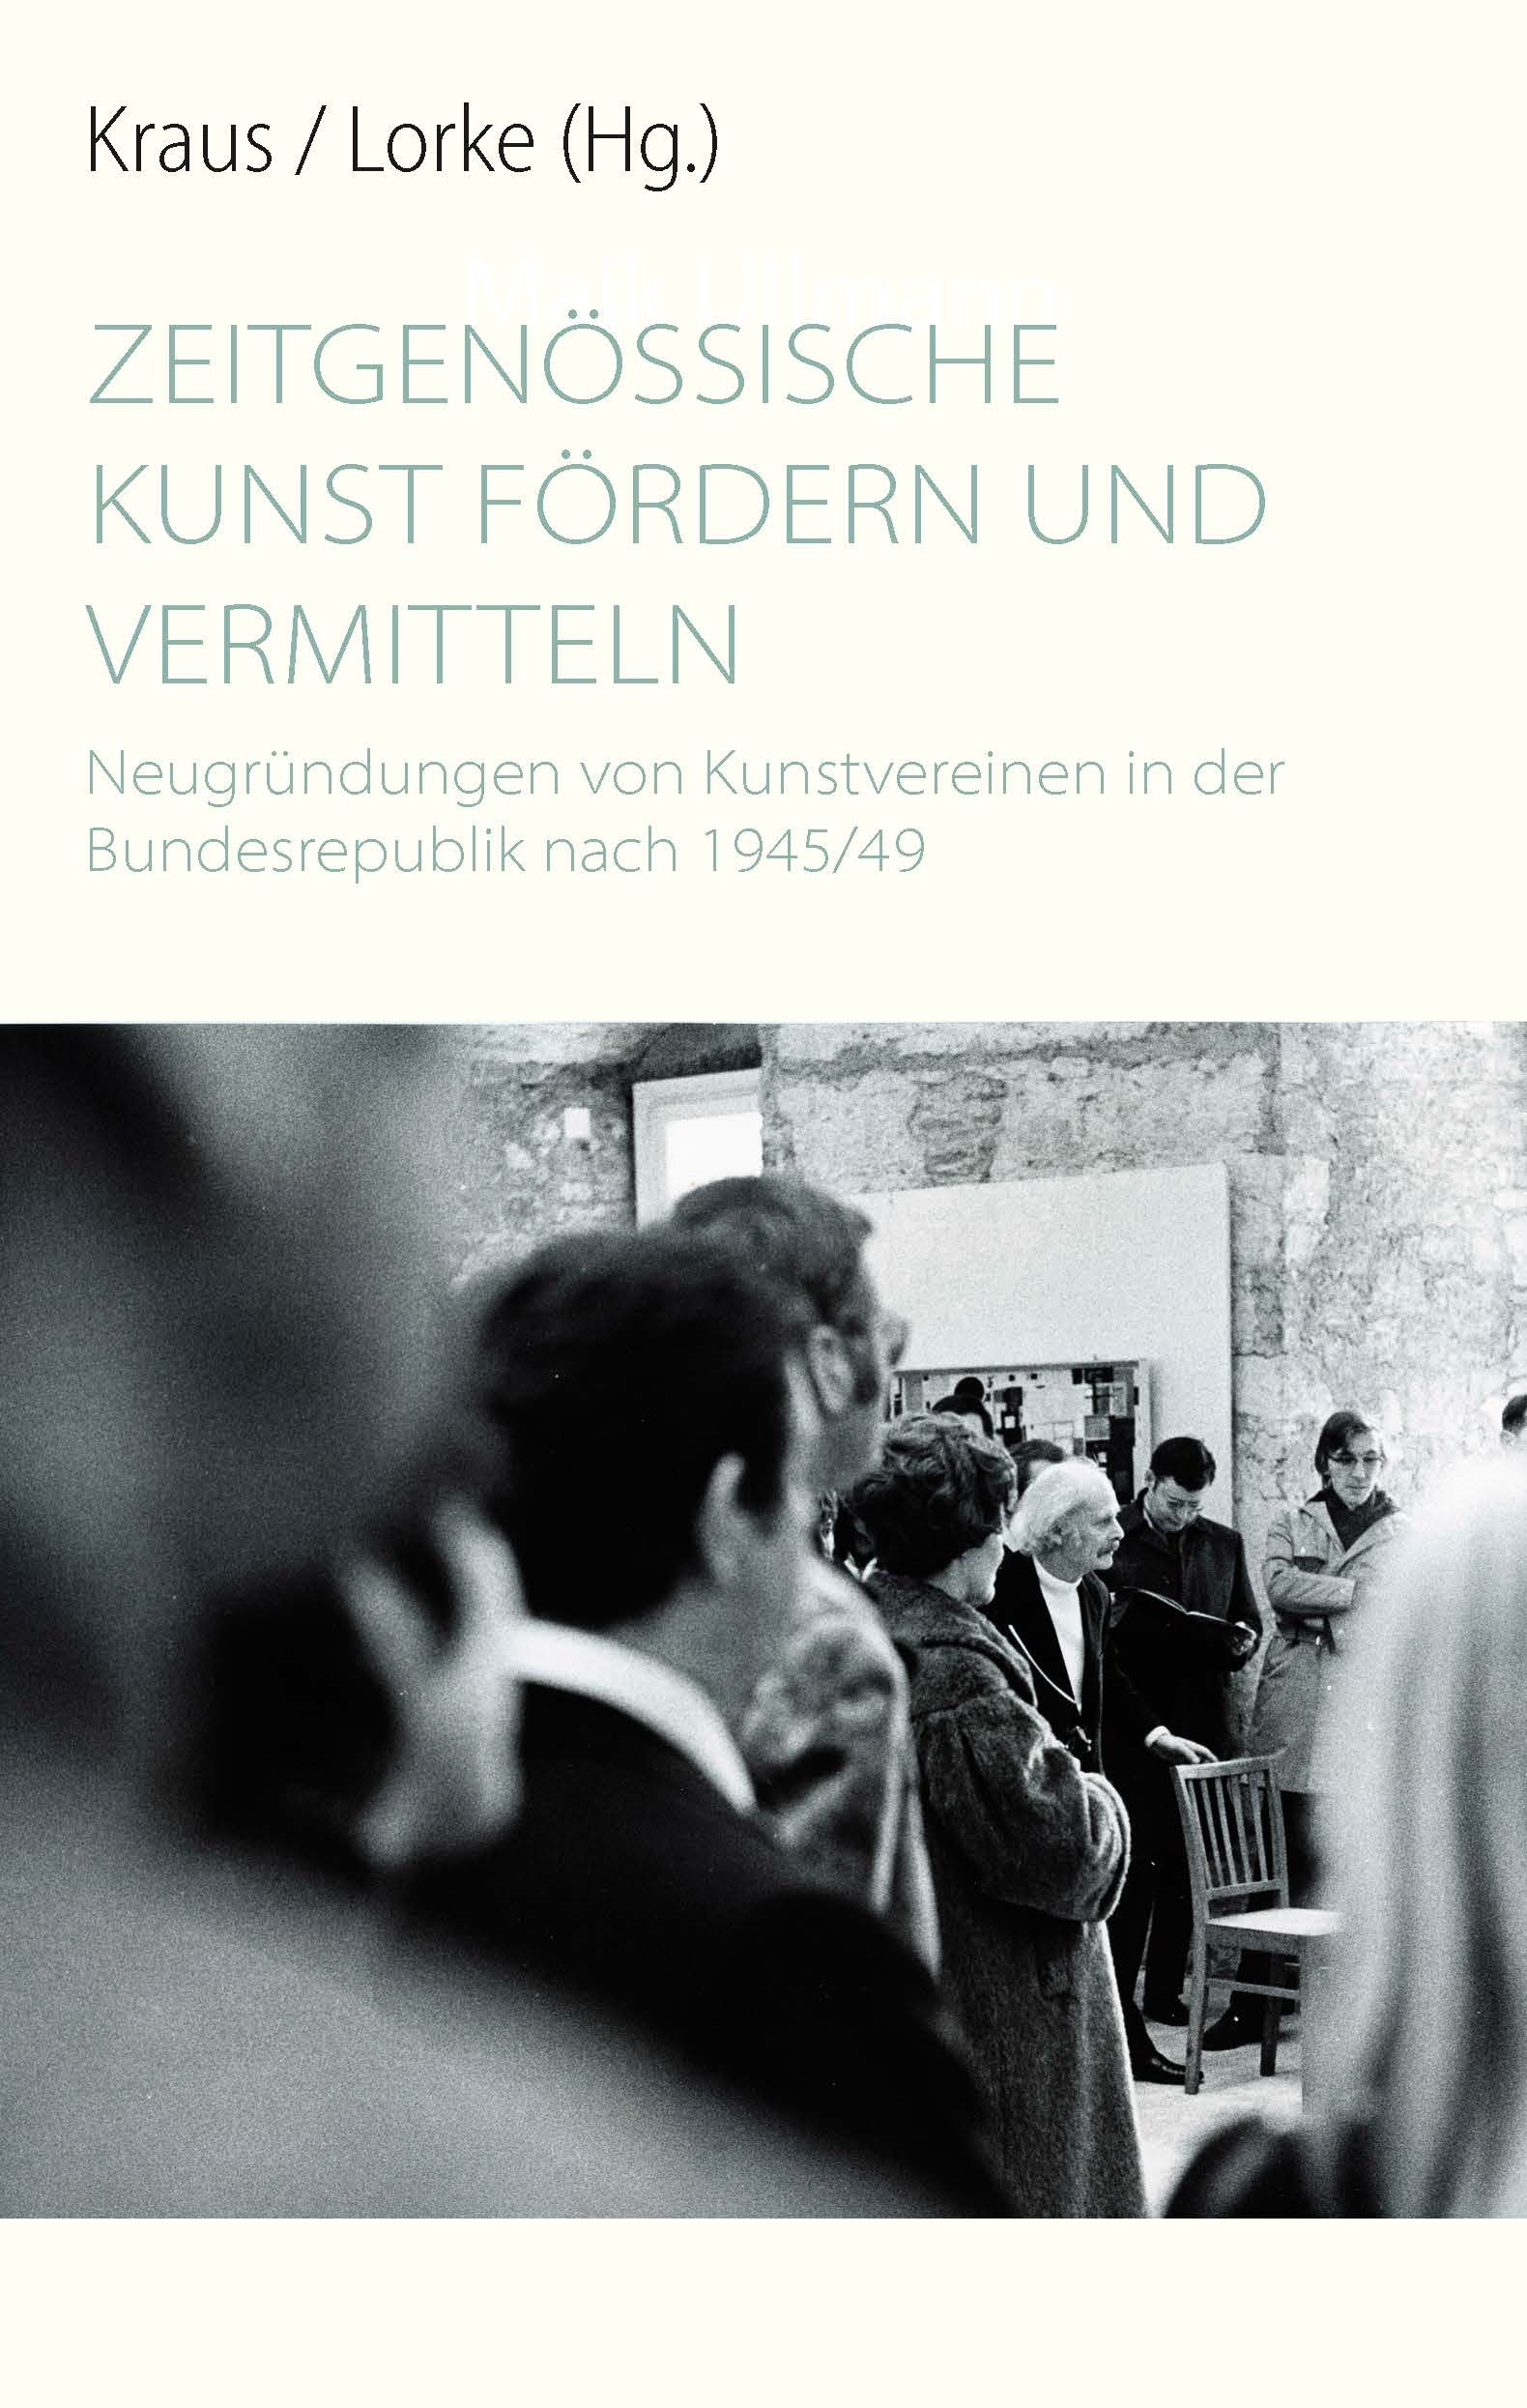 Titelblatt des Buchs "Zeitgenössische Kunst fördern und vermitteln. Neugründungen von Kunstvereinen in der Bundesrepublik nach 1945/49"